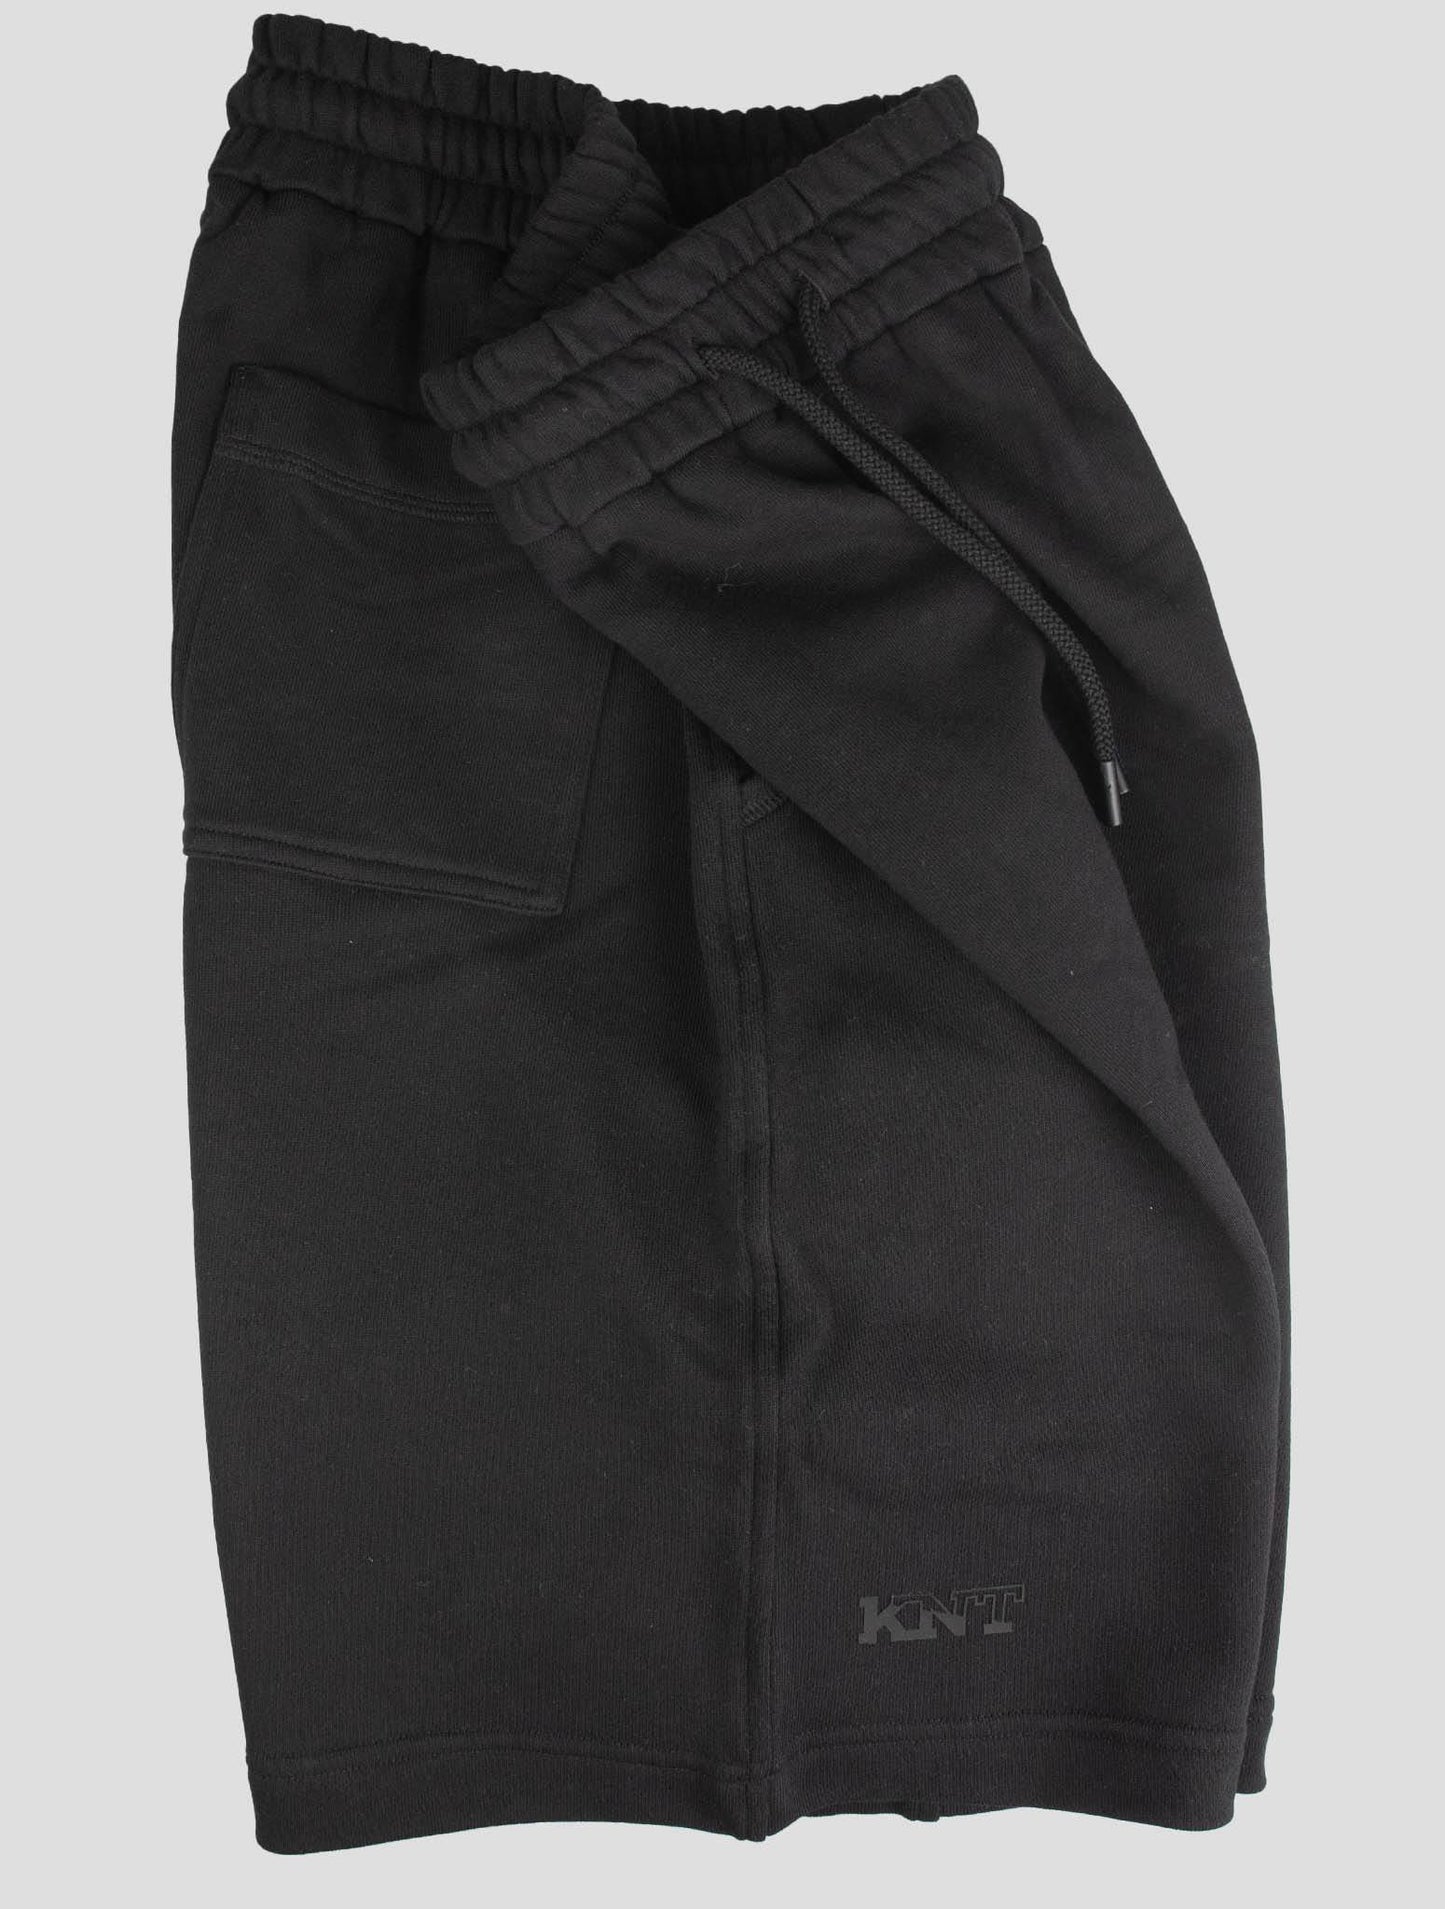 KNT Kiton Black Cotton Short Pants